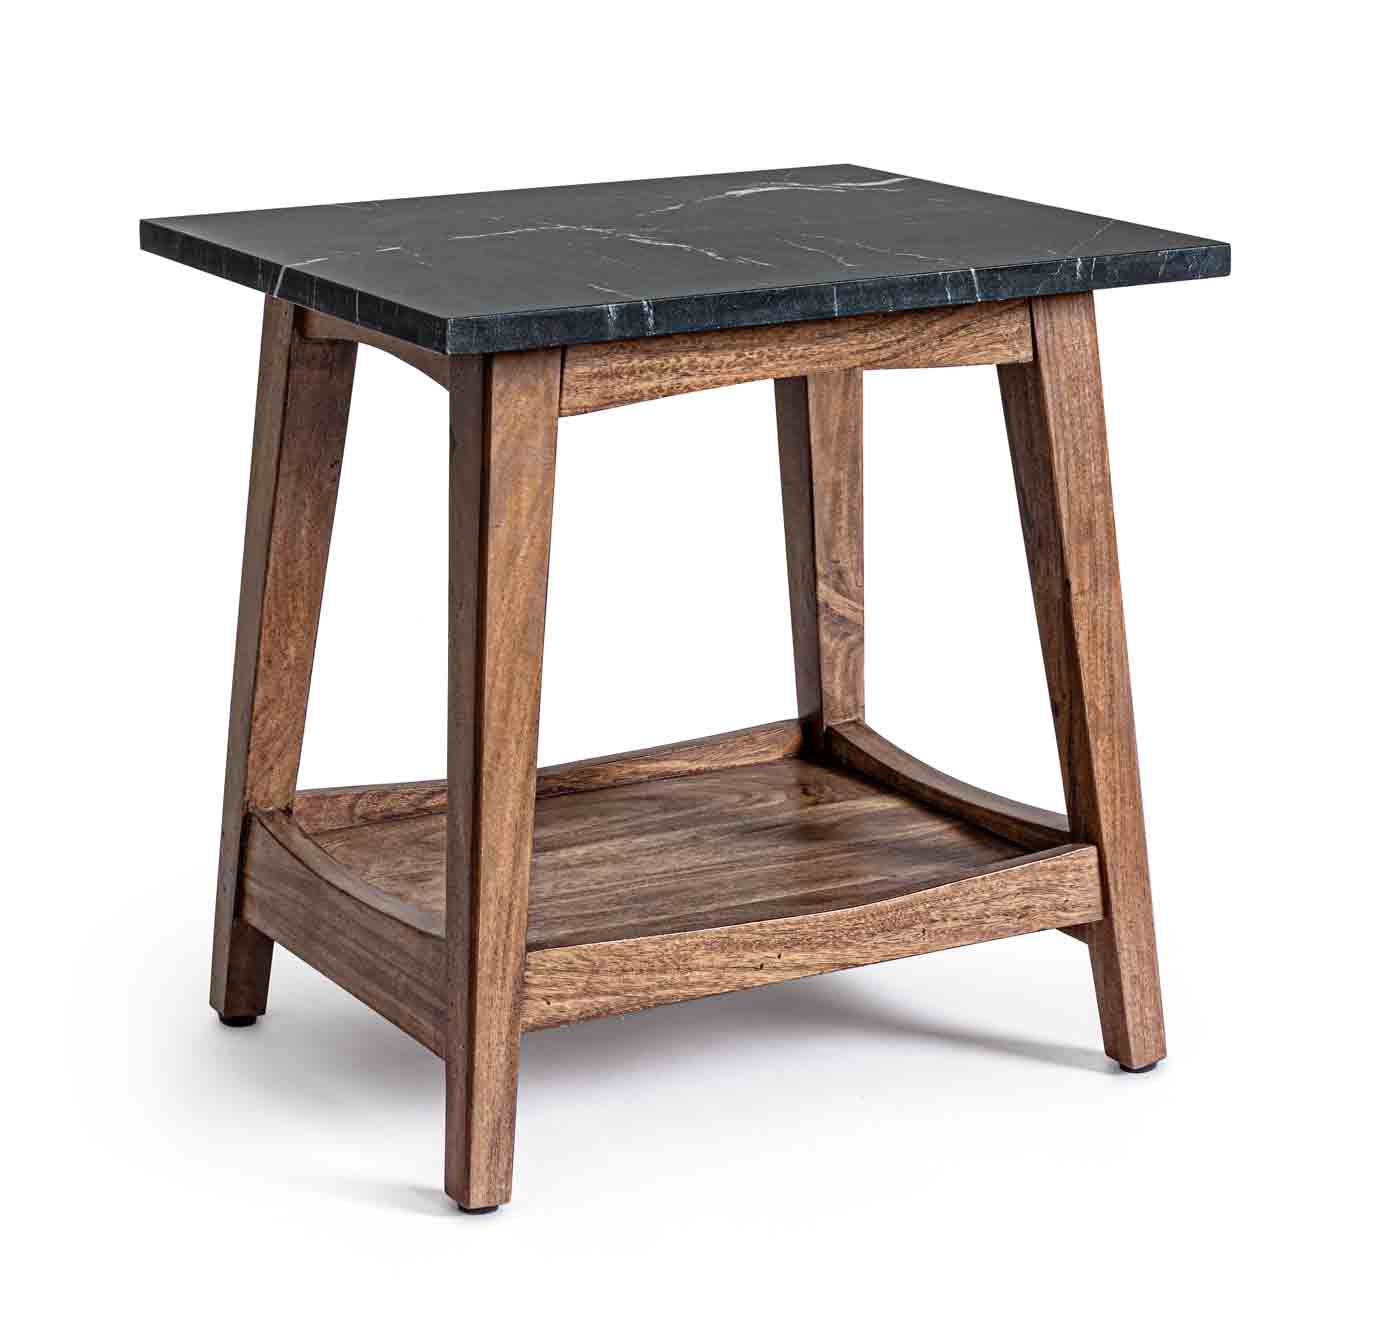 Stilvoller Couchtisch Pueblo wurde aus einem Akazienholzgestell gefertigt. Die Oberfläche ist aus Marmor. Der Tisch besitzt eine Unterplatte für ausreichend Stauraum.